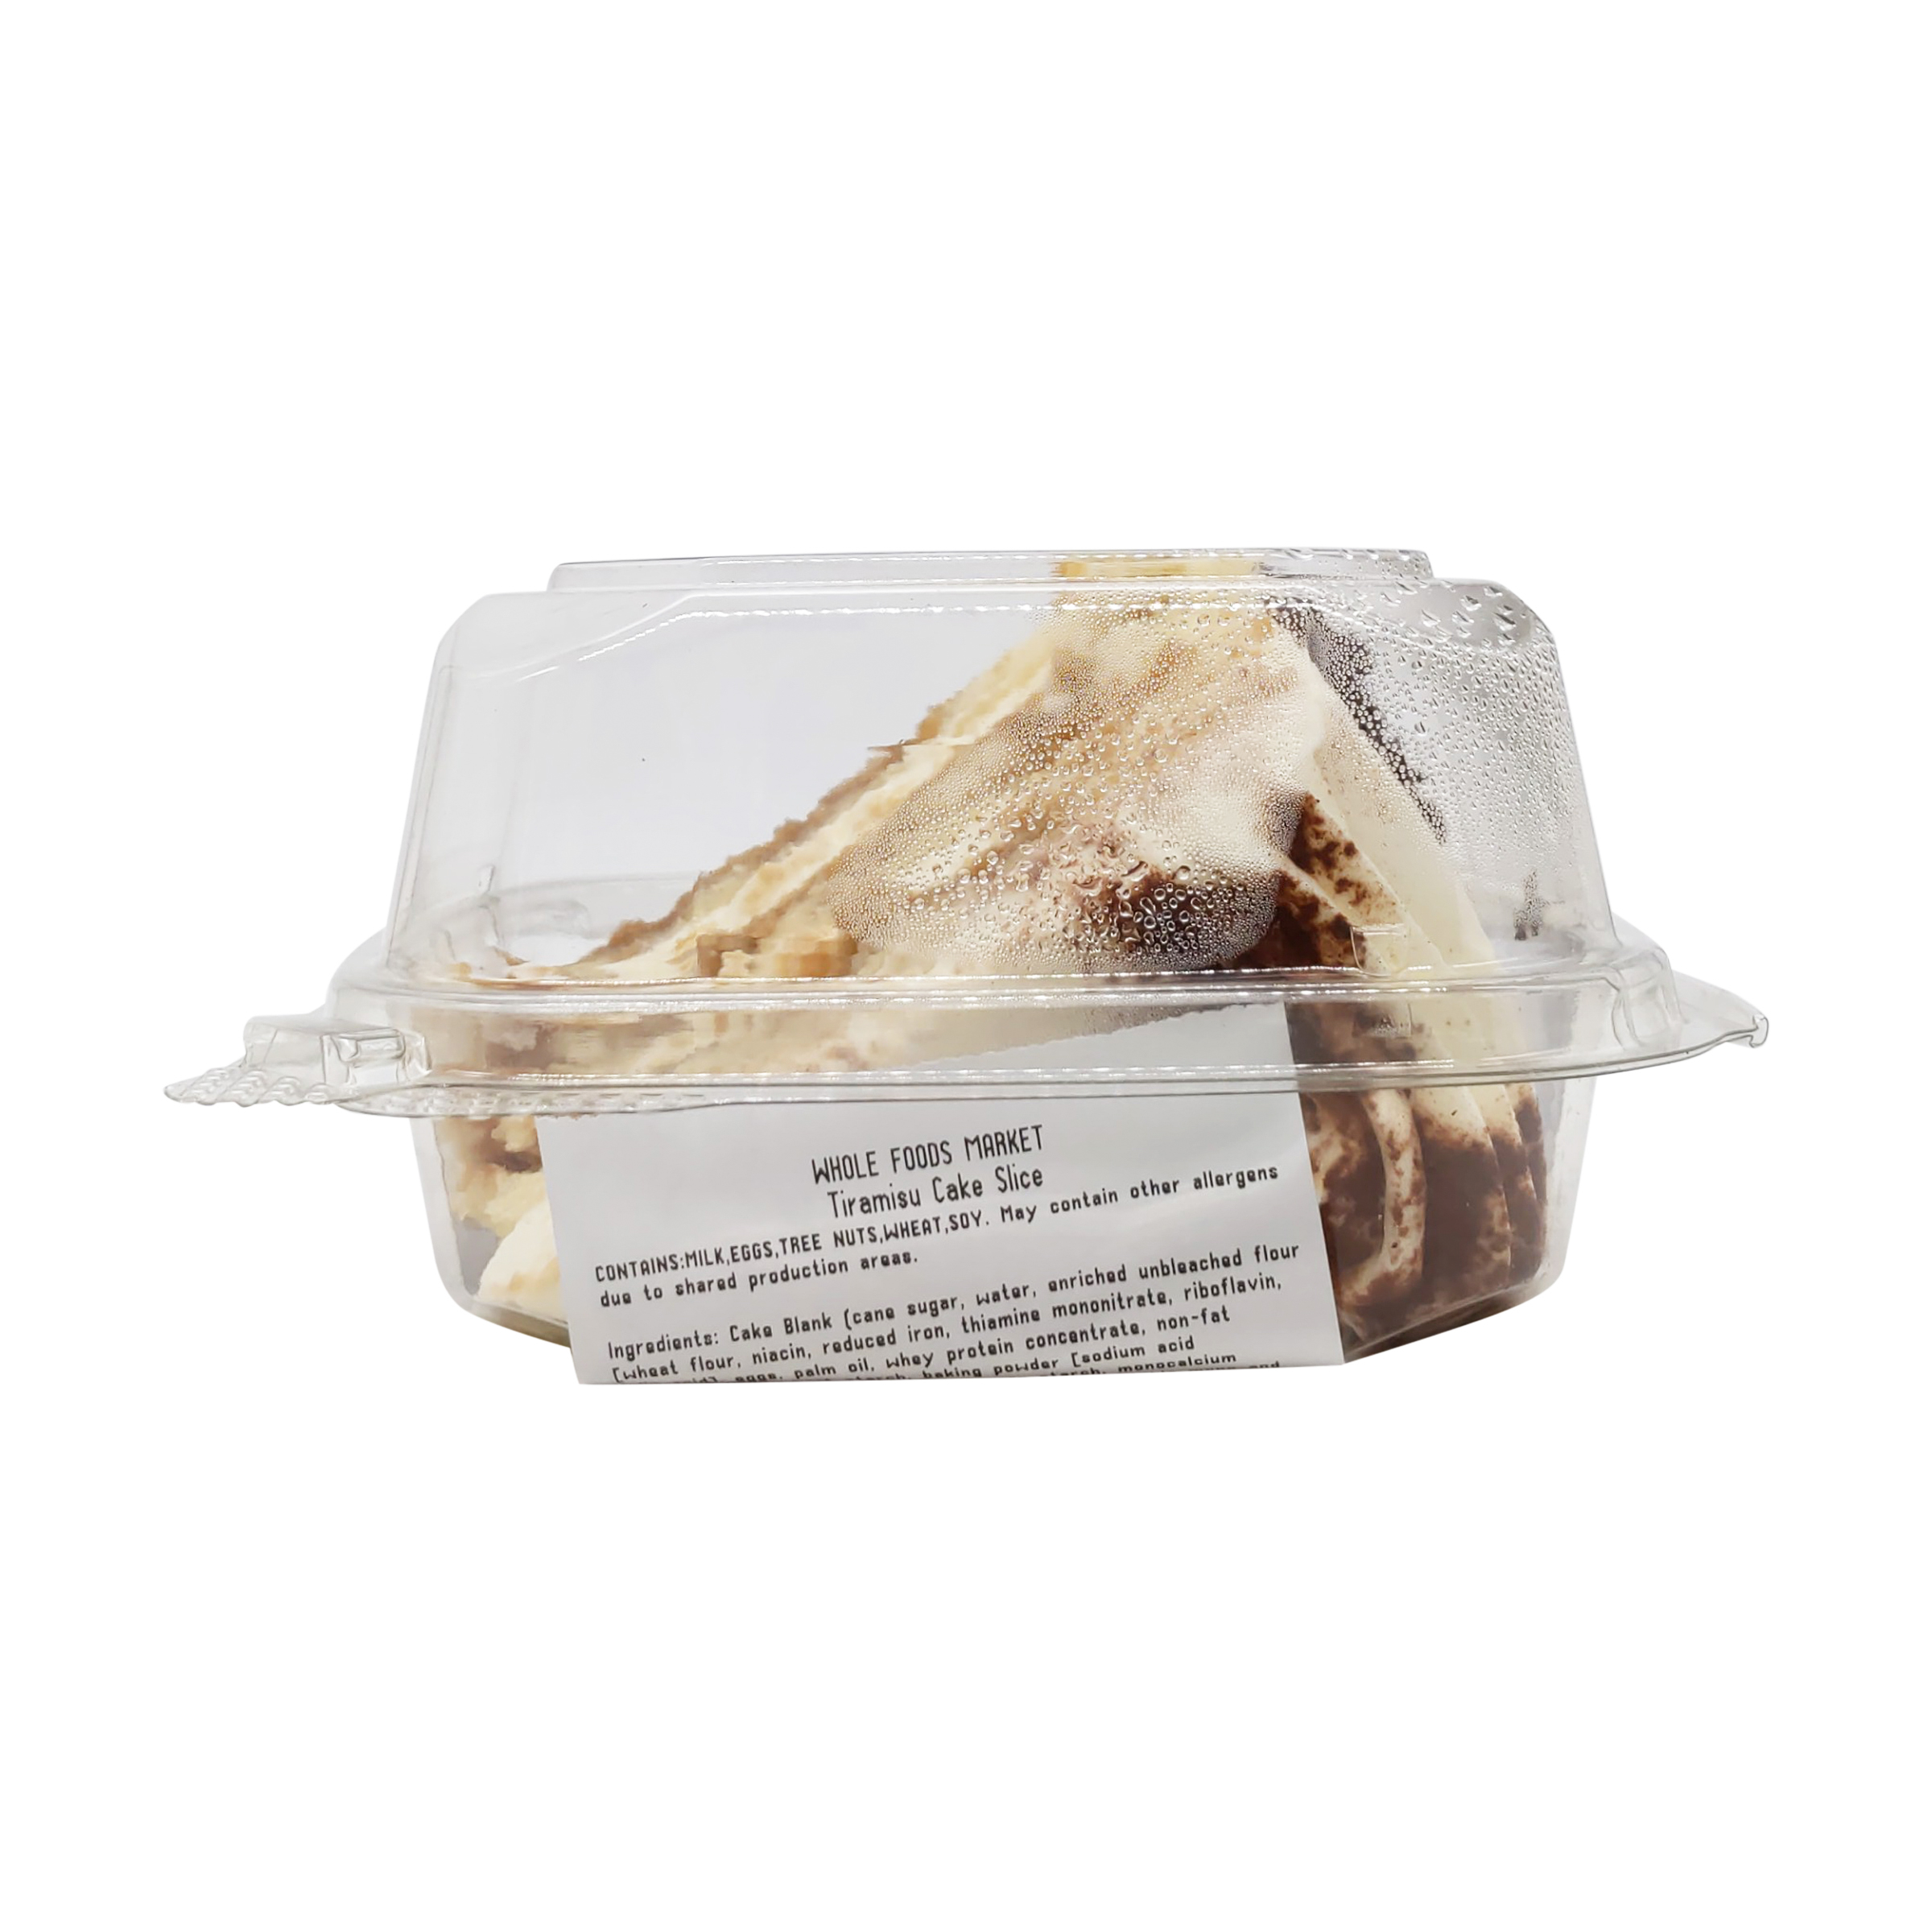 Tiramisu Cake Slice 4 Oz Whole Foods Market Whole Foods Market